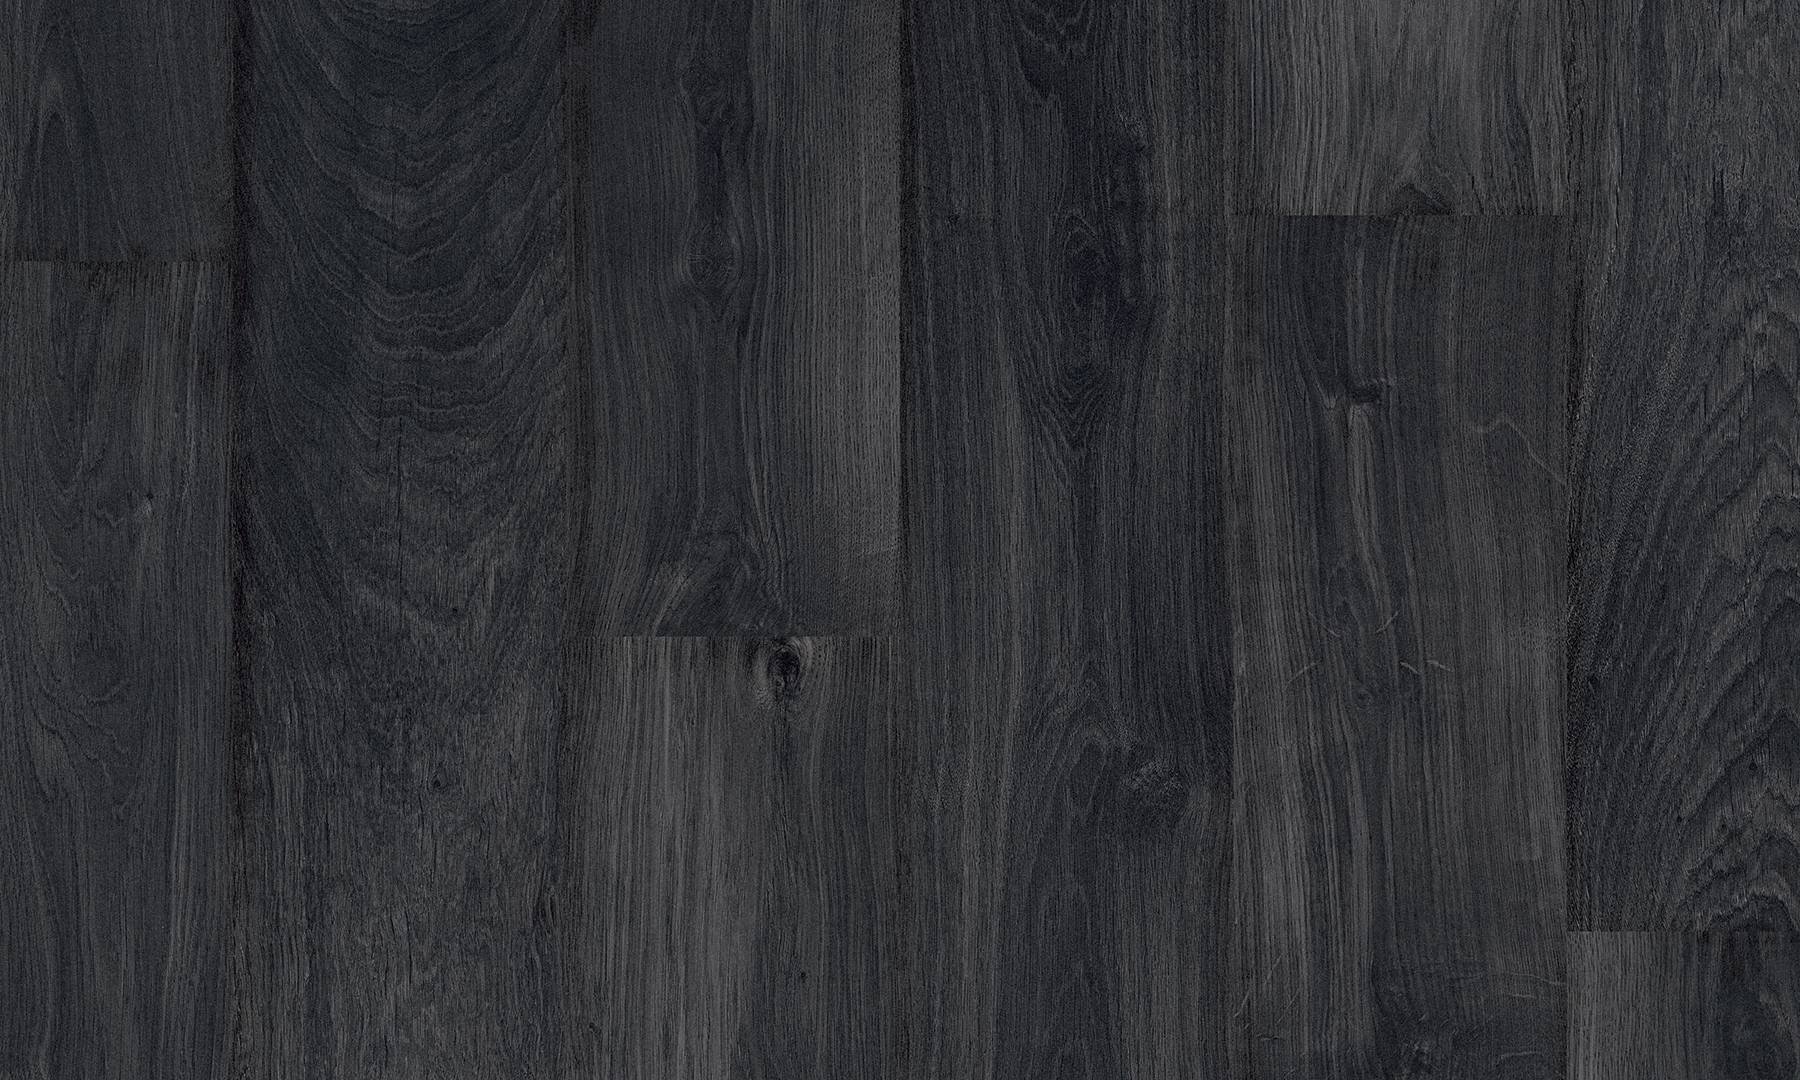 Черный дуб купить. Pergo Original Excellence Classic Plank дуб черный (арт. 0201-01806. Ламинат Imperial Brilliance 1830 графит темный. Ламинат Balterio дуб смолистый 580. Parador дуб черный.